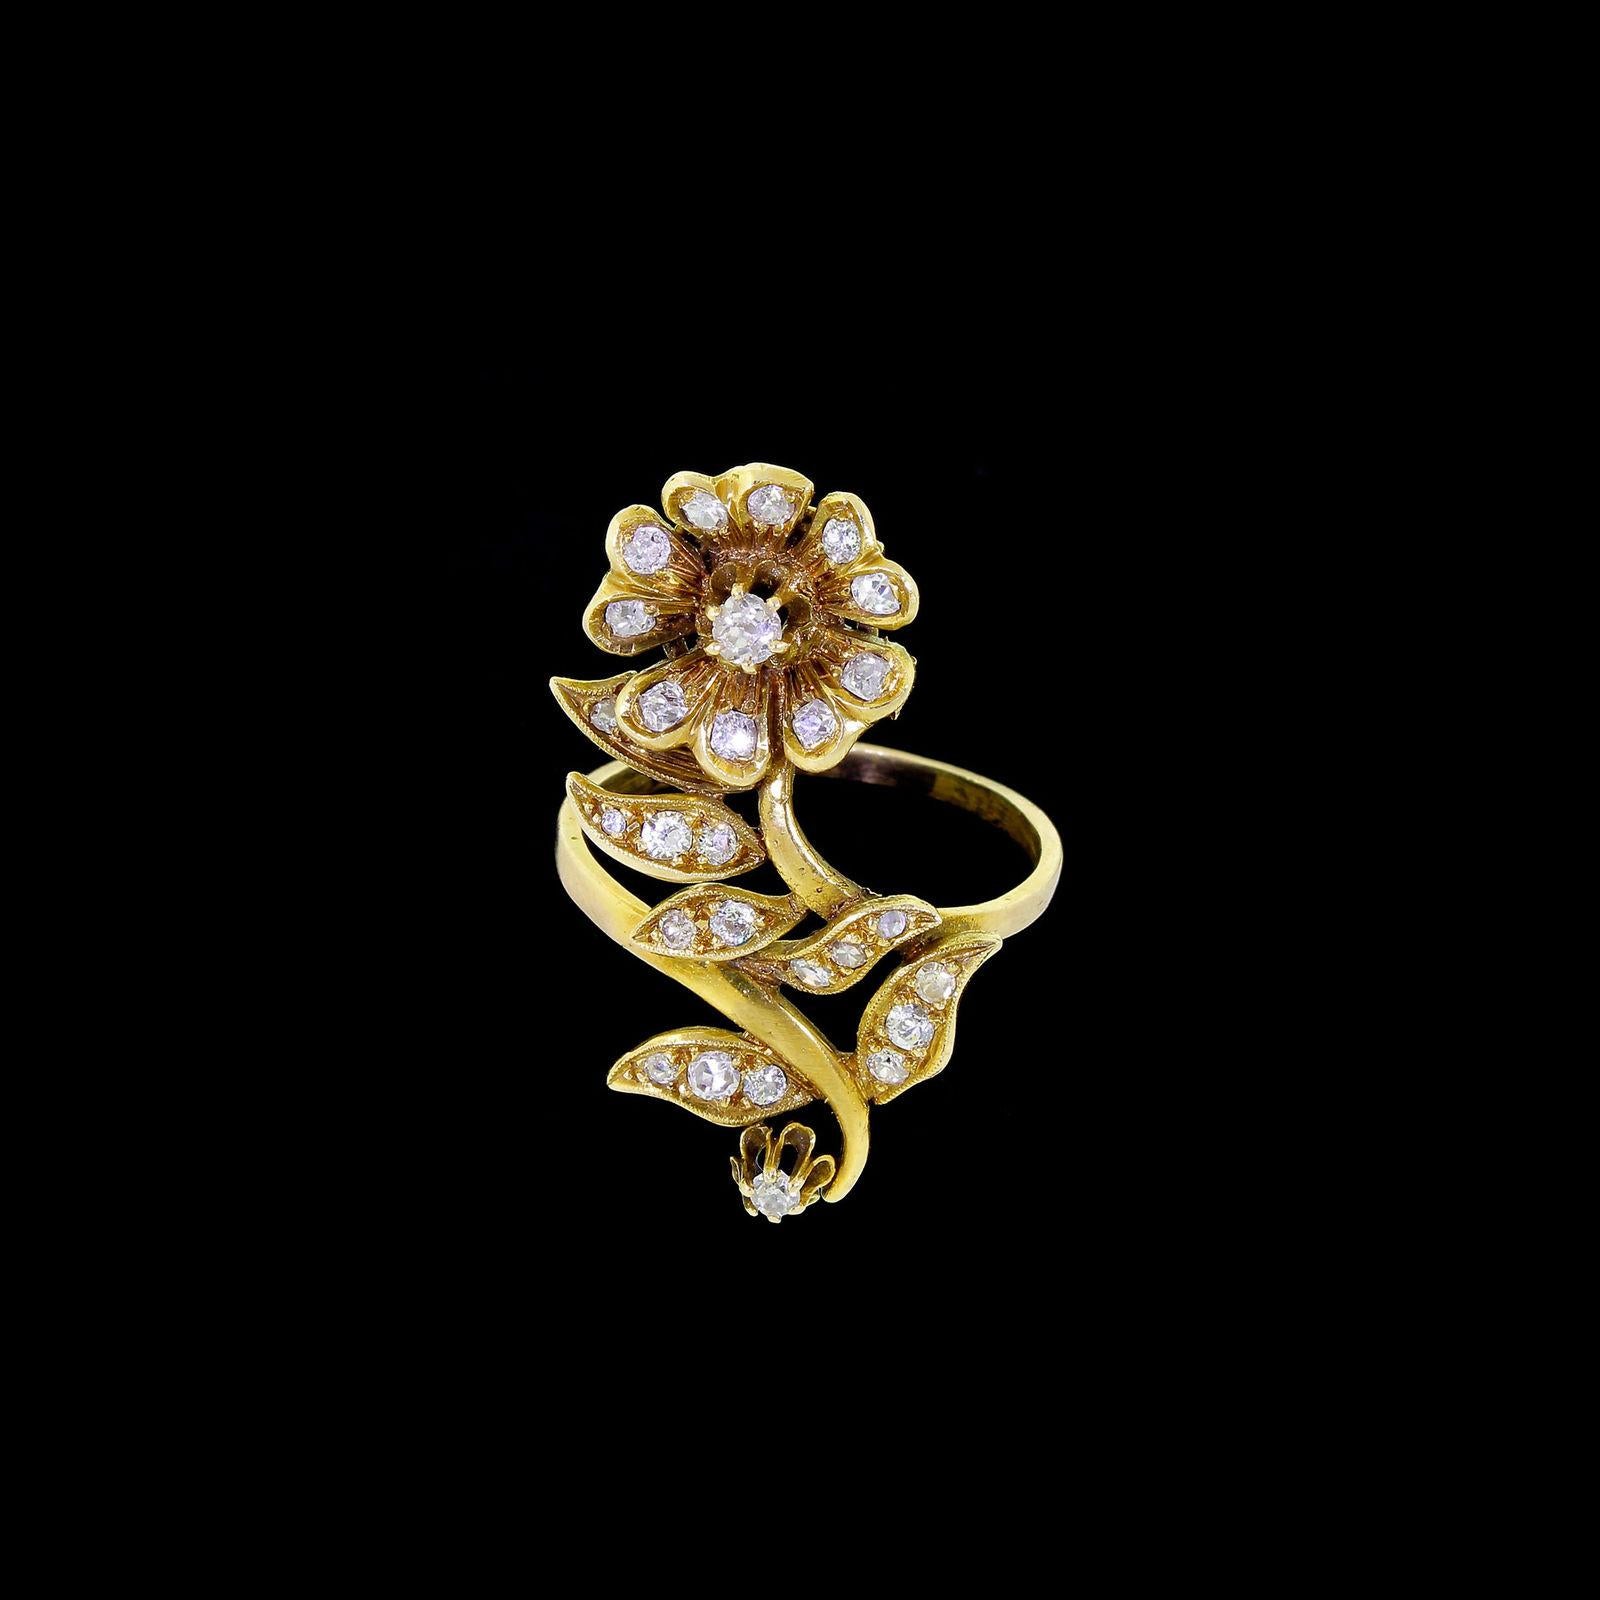 Dieser Ring ist wirklich beeindruckend: 27 Diamanten glitzern und funkeln in diesem langgestreckten floralen Design.
Der Ring ist europäischer Herkunft, er hat eine Mischung aus Diamanten im Minen- und Rosenschliff und ein paar, die wie